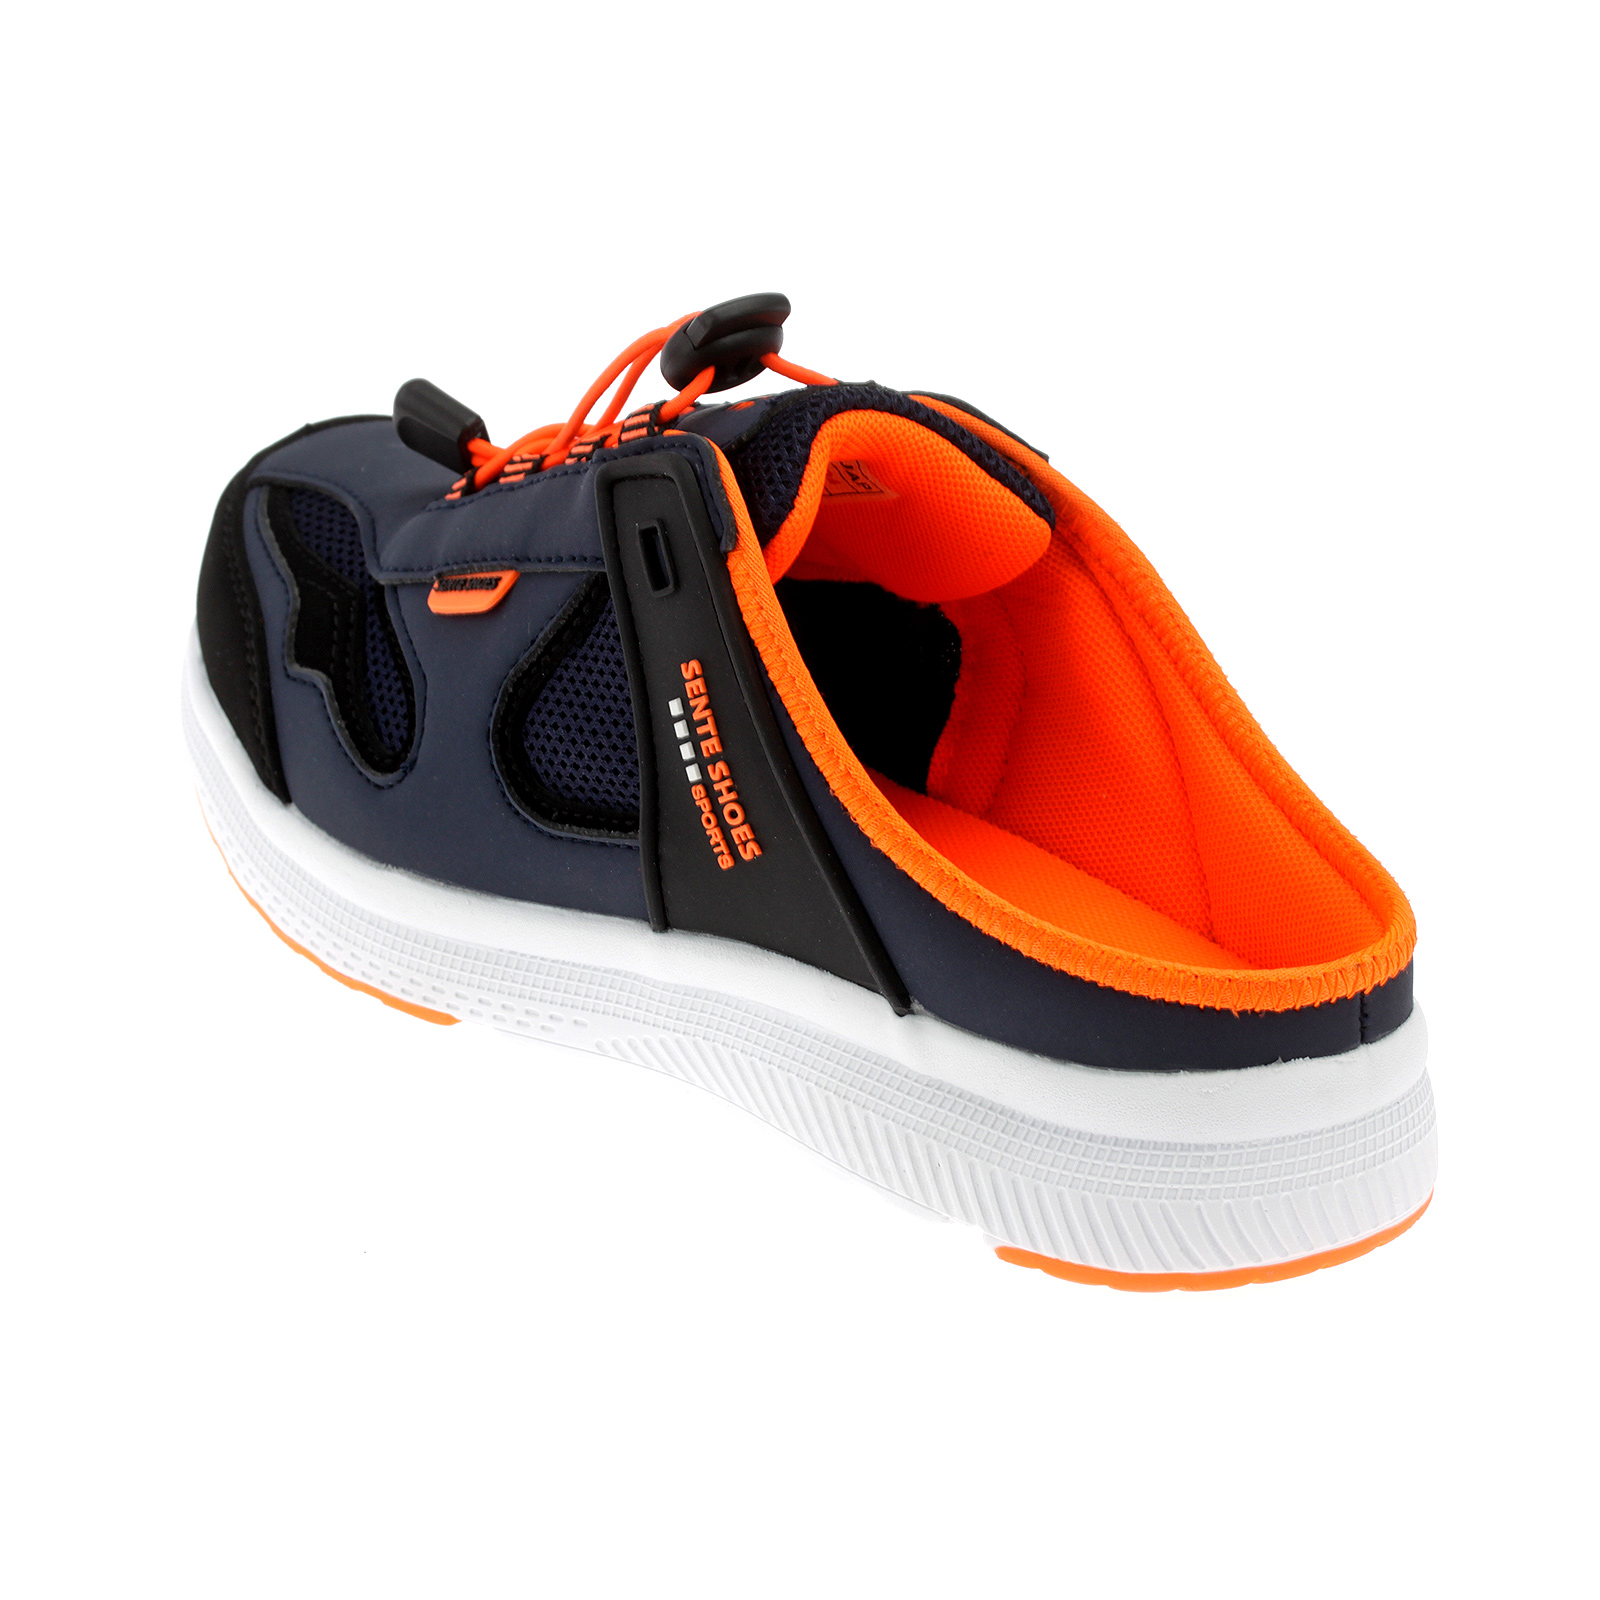 Herren Damen Pantoletten Sabots Sneaker Sandalette Slipper Freizeitschuhe AB2101 Navy Orange